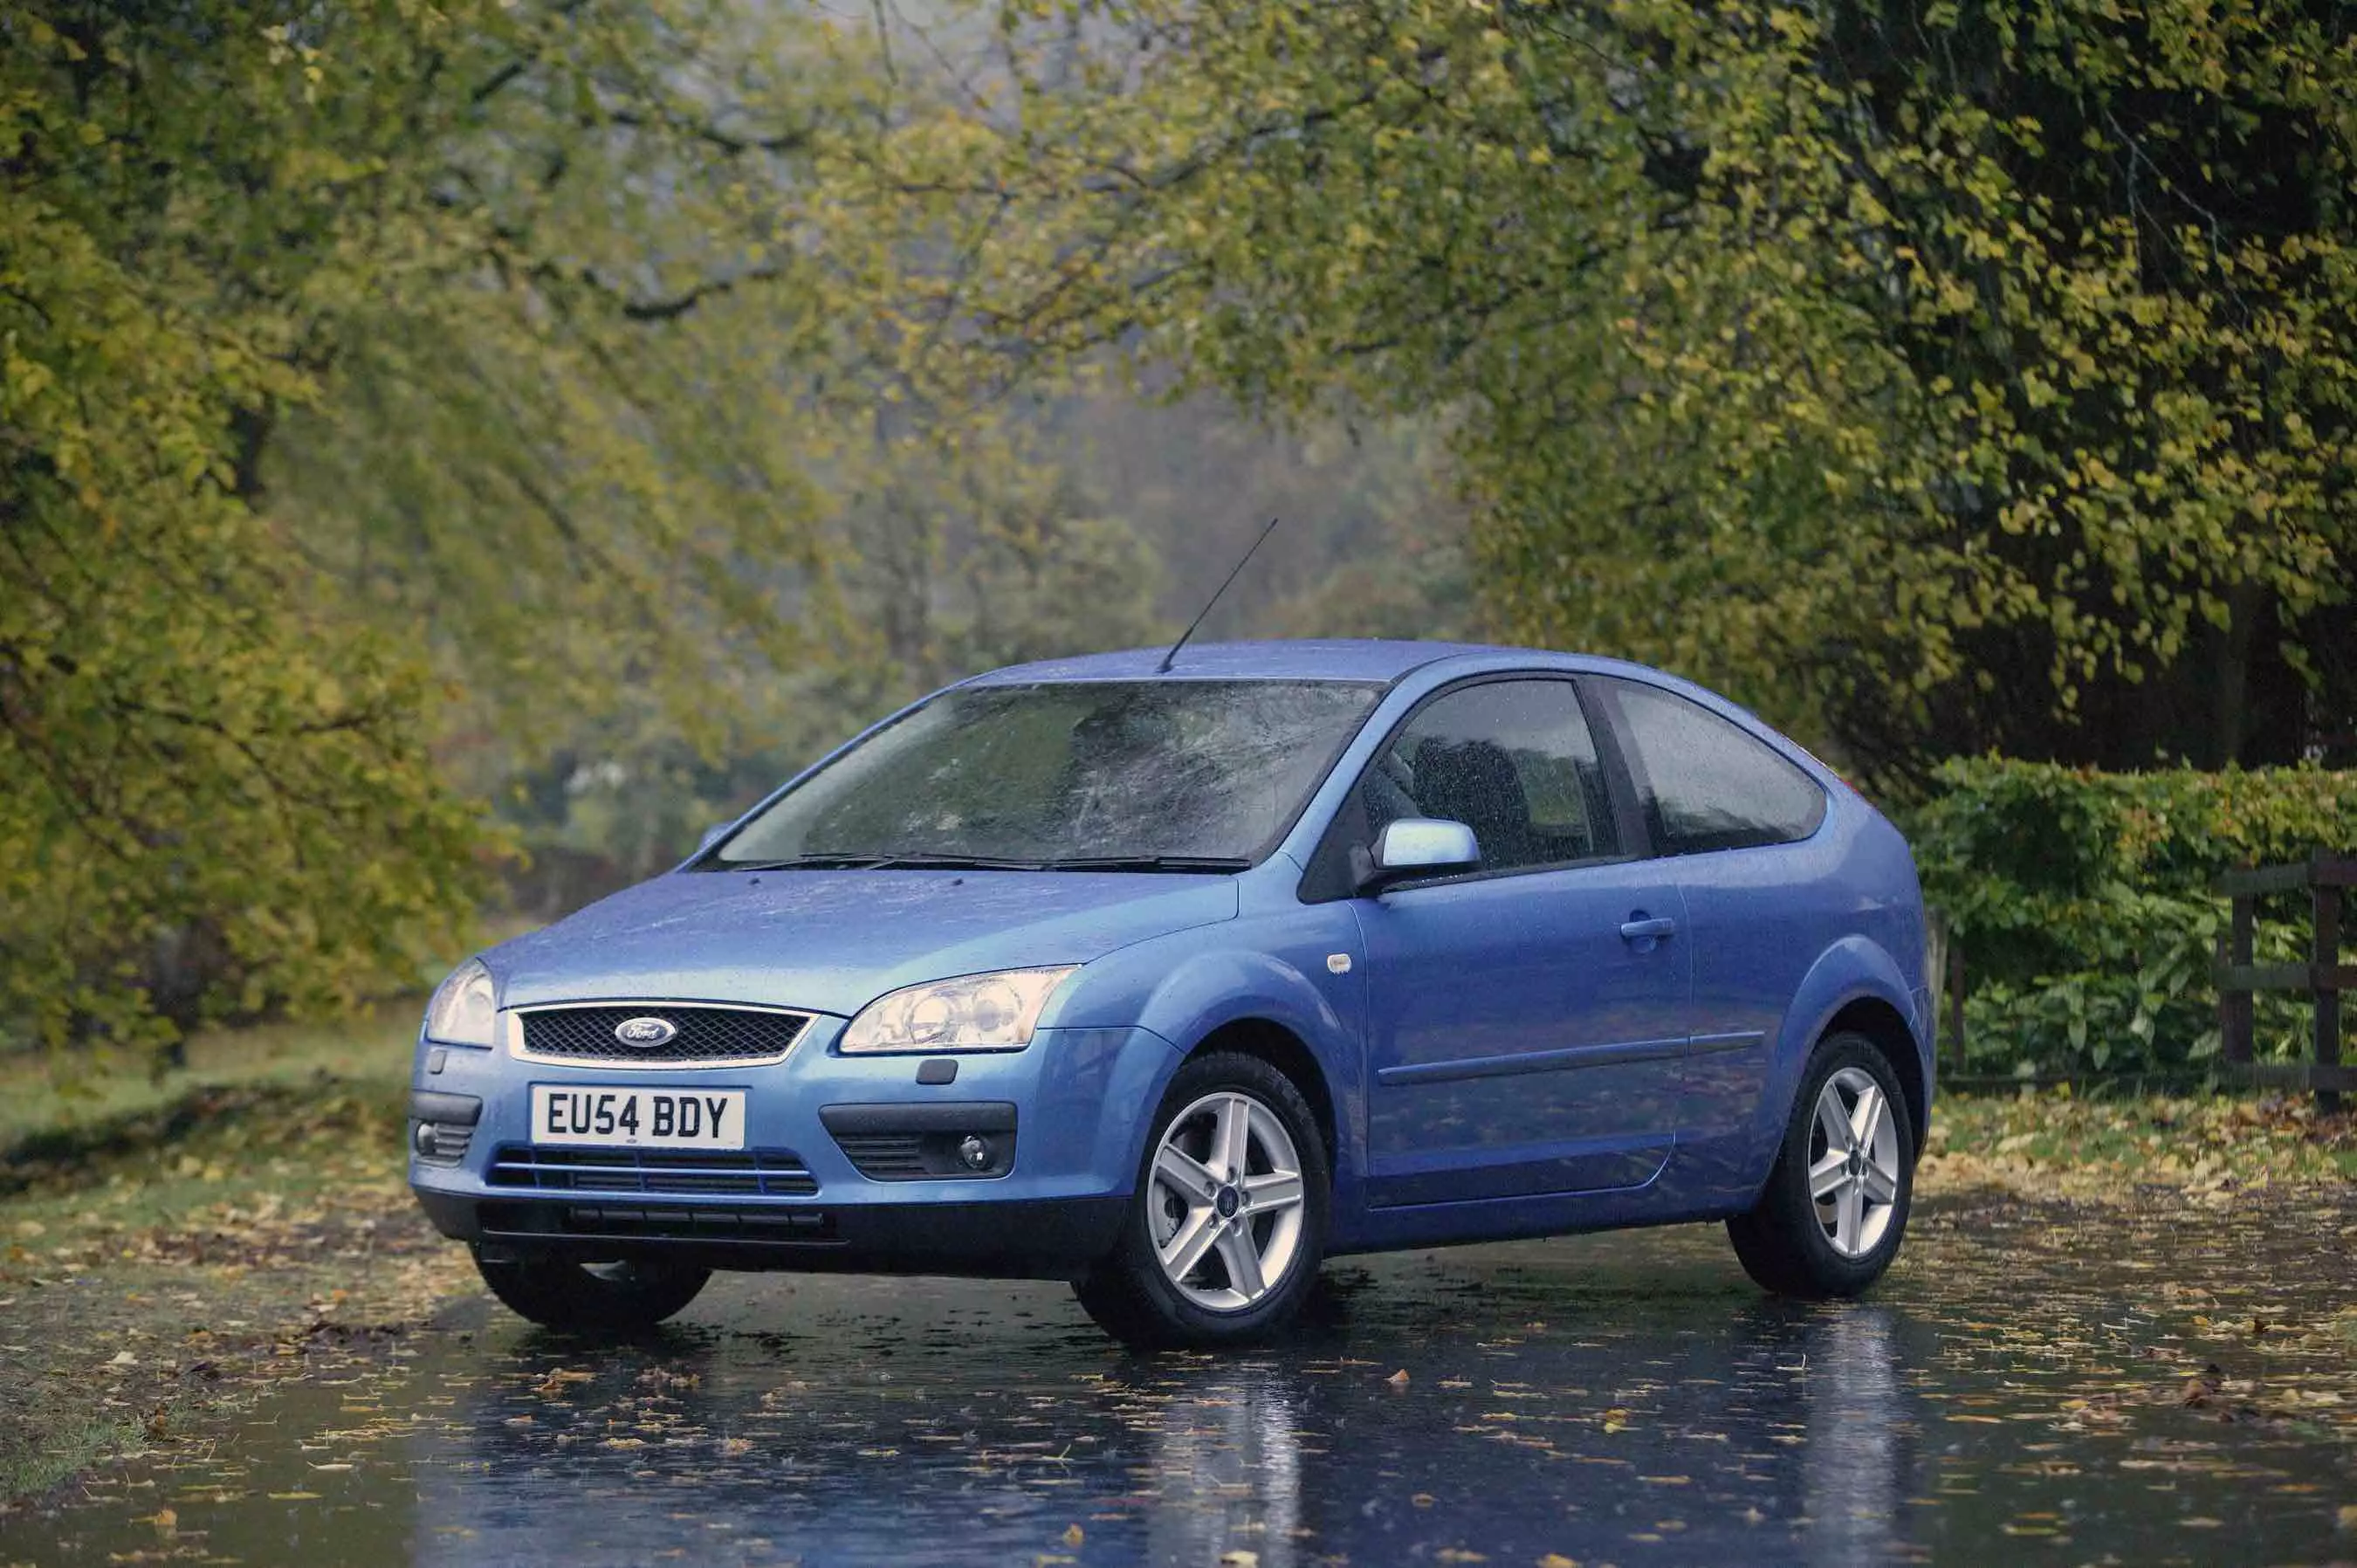 Buyer's guide: Mk2 Ford Focus diesel (2005-2011)